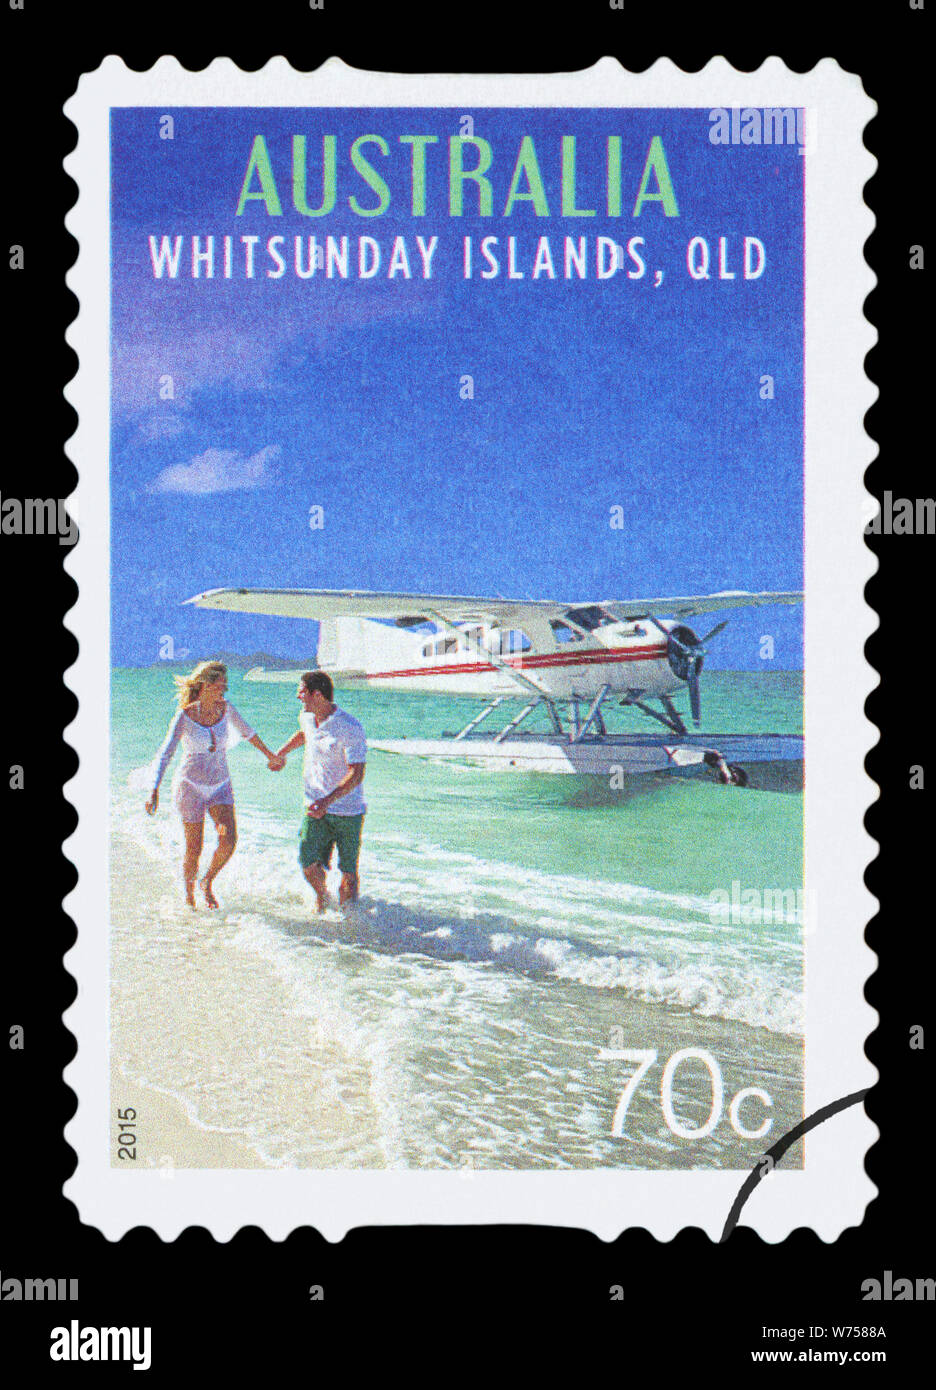 Australien - ca. 2015: einen gebrauchten Briefmarke aus Australien, zeigt ein Bild der Whitsunday Islands, QLD, circa 2015. Stockfoto